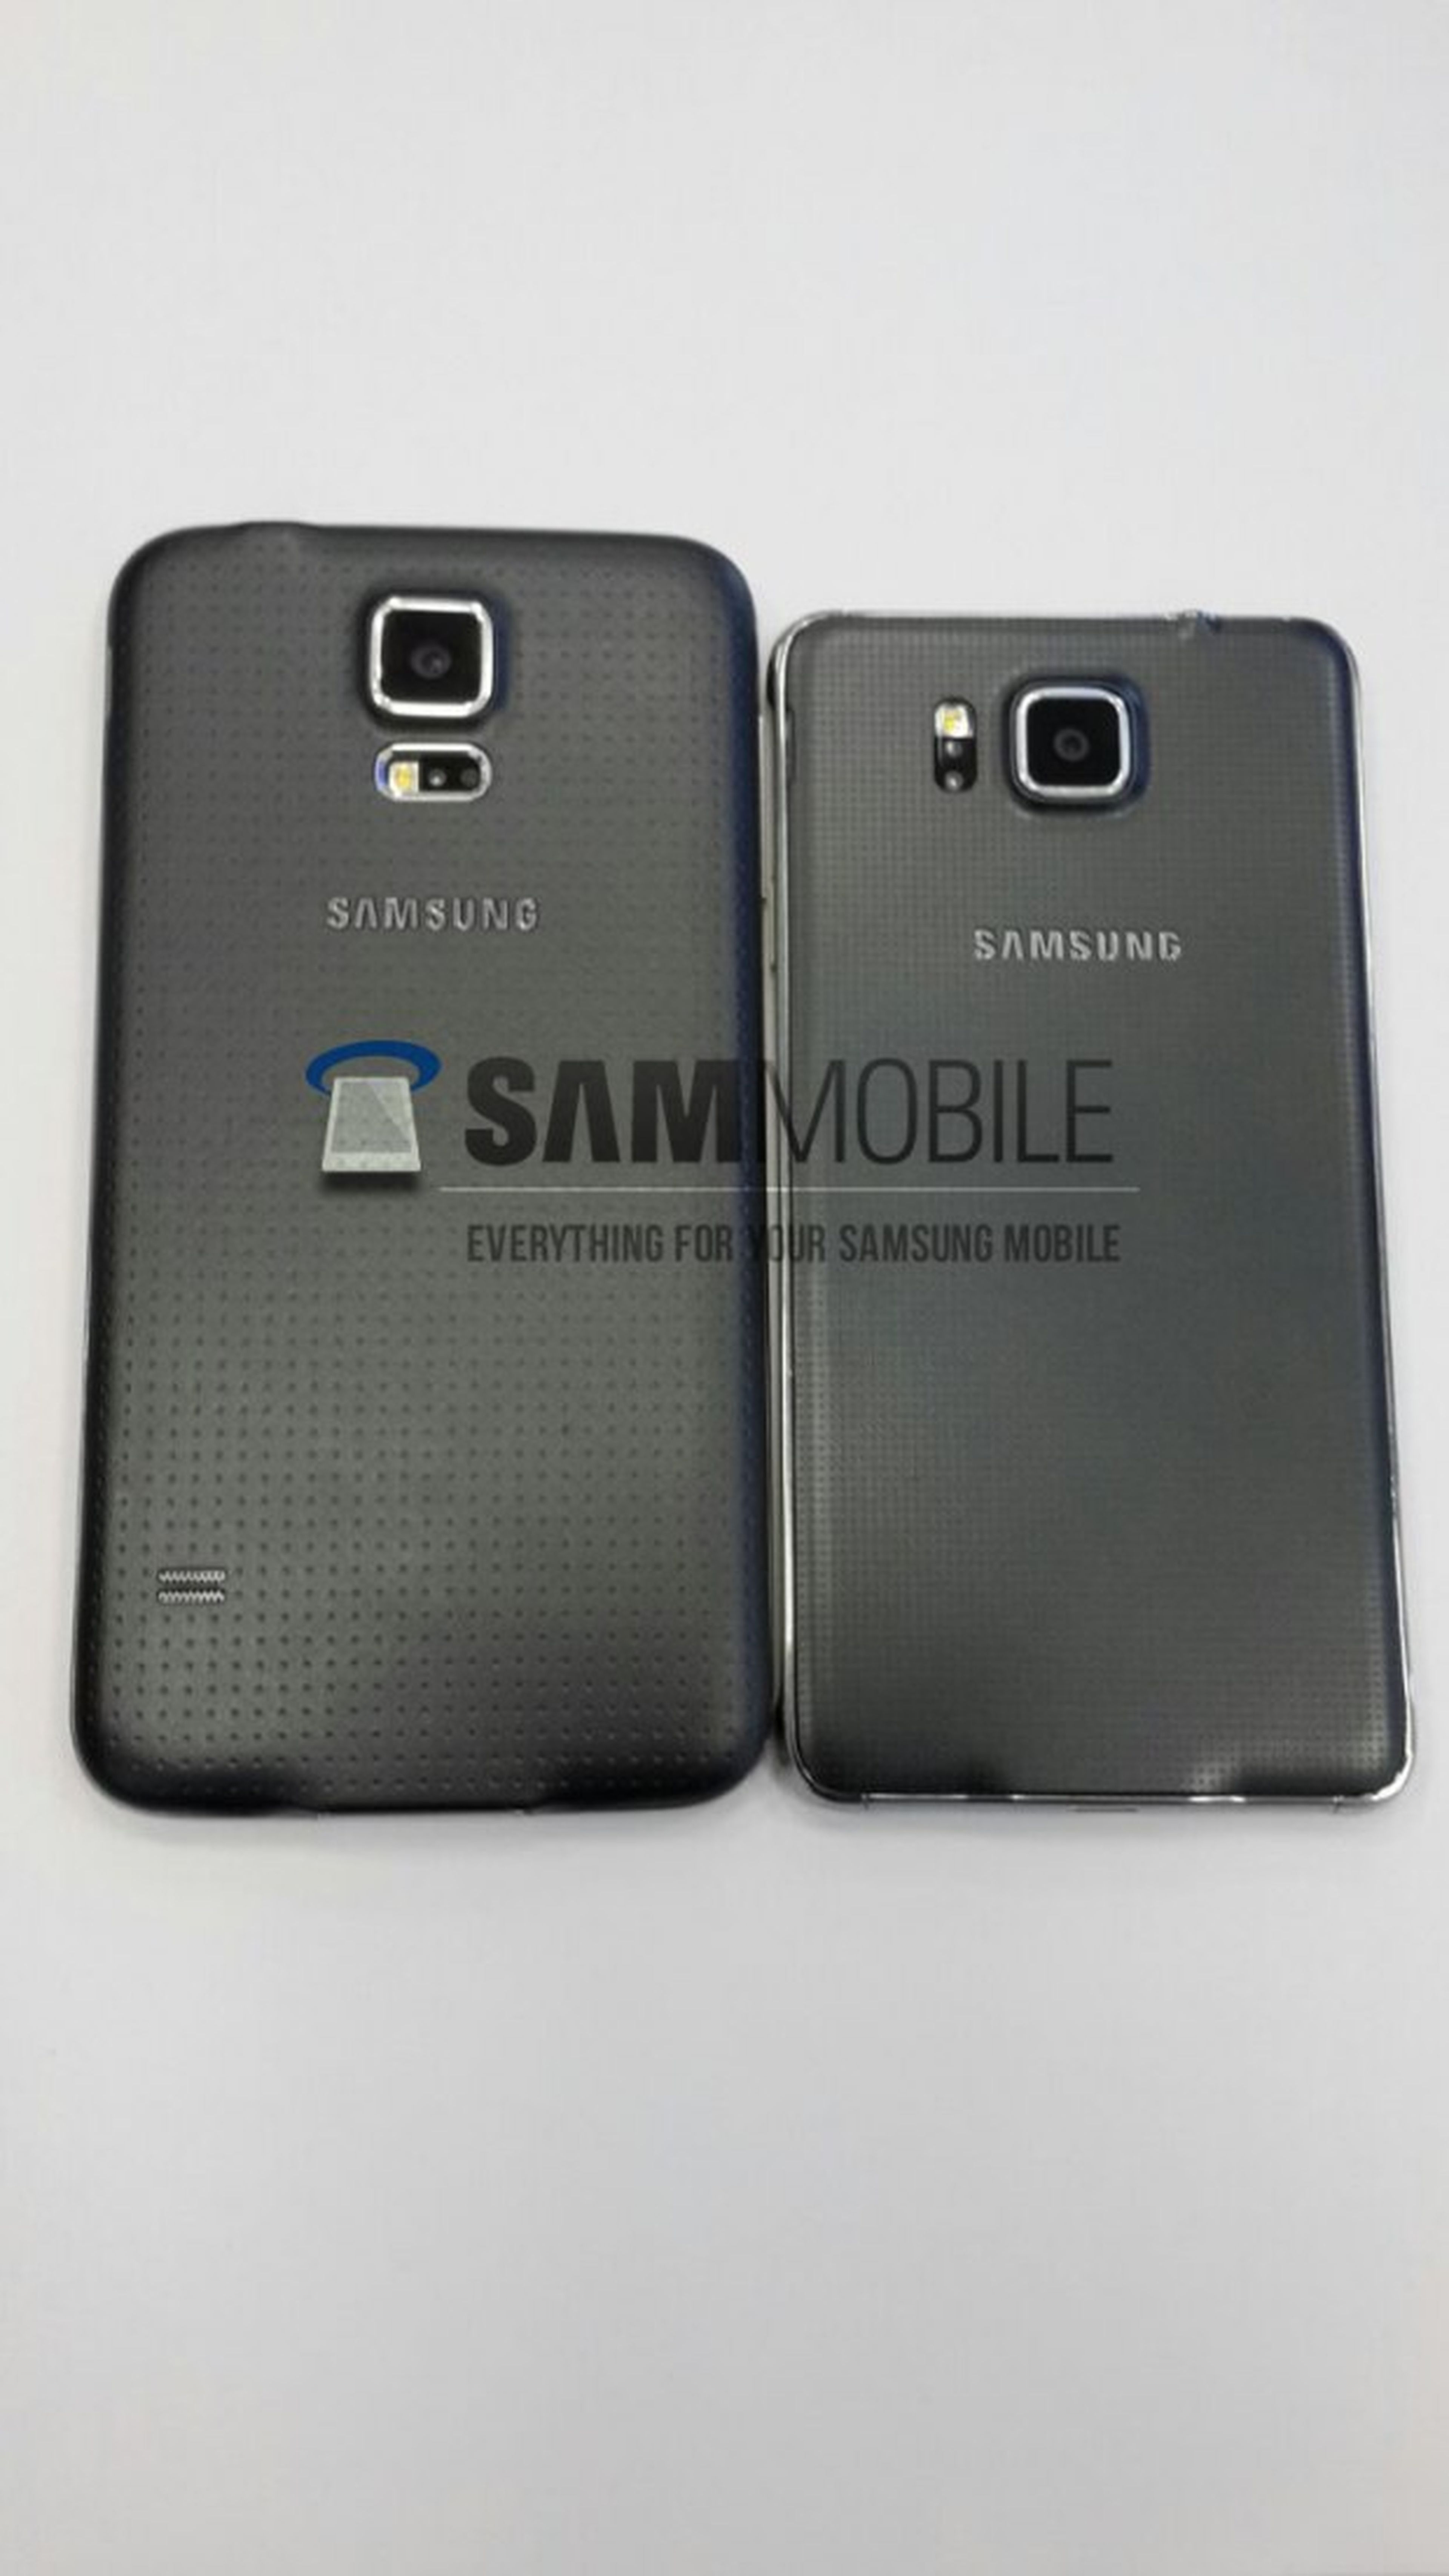 Samsung galaxy alpha comparación